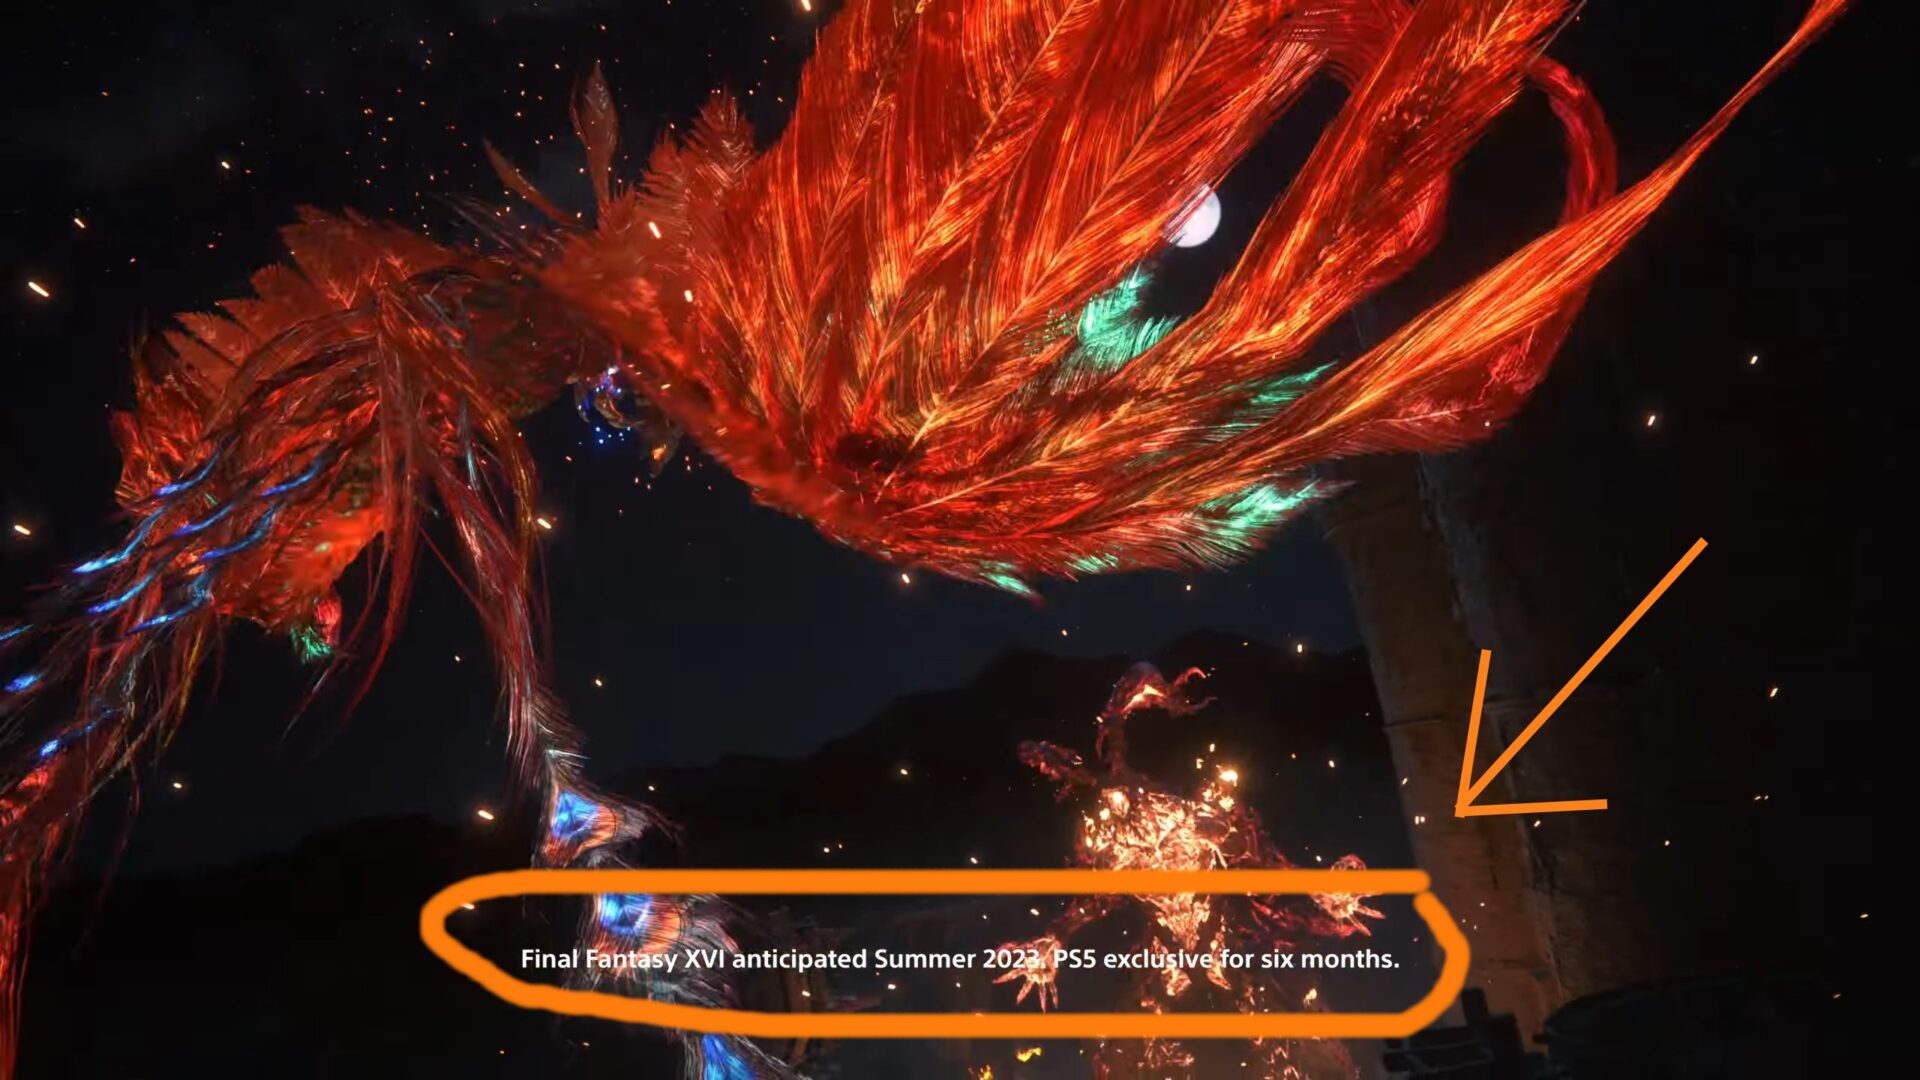 Captura de imagem mostra trailer que confirma: Final Fantasy XVI ficará no PlayStation 5 como exclusivo por seis meses antes de chegar ao Xbox